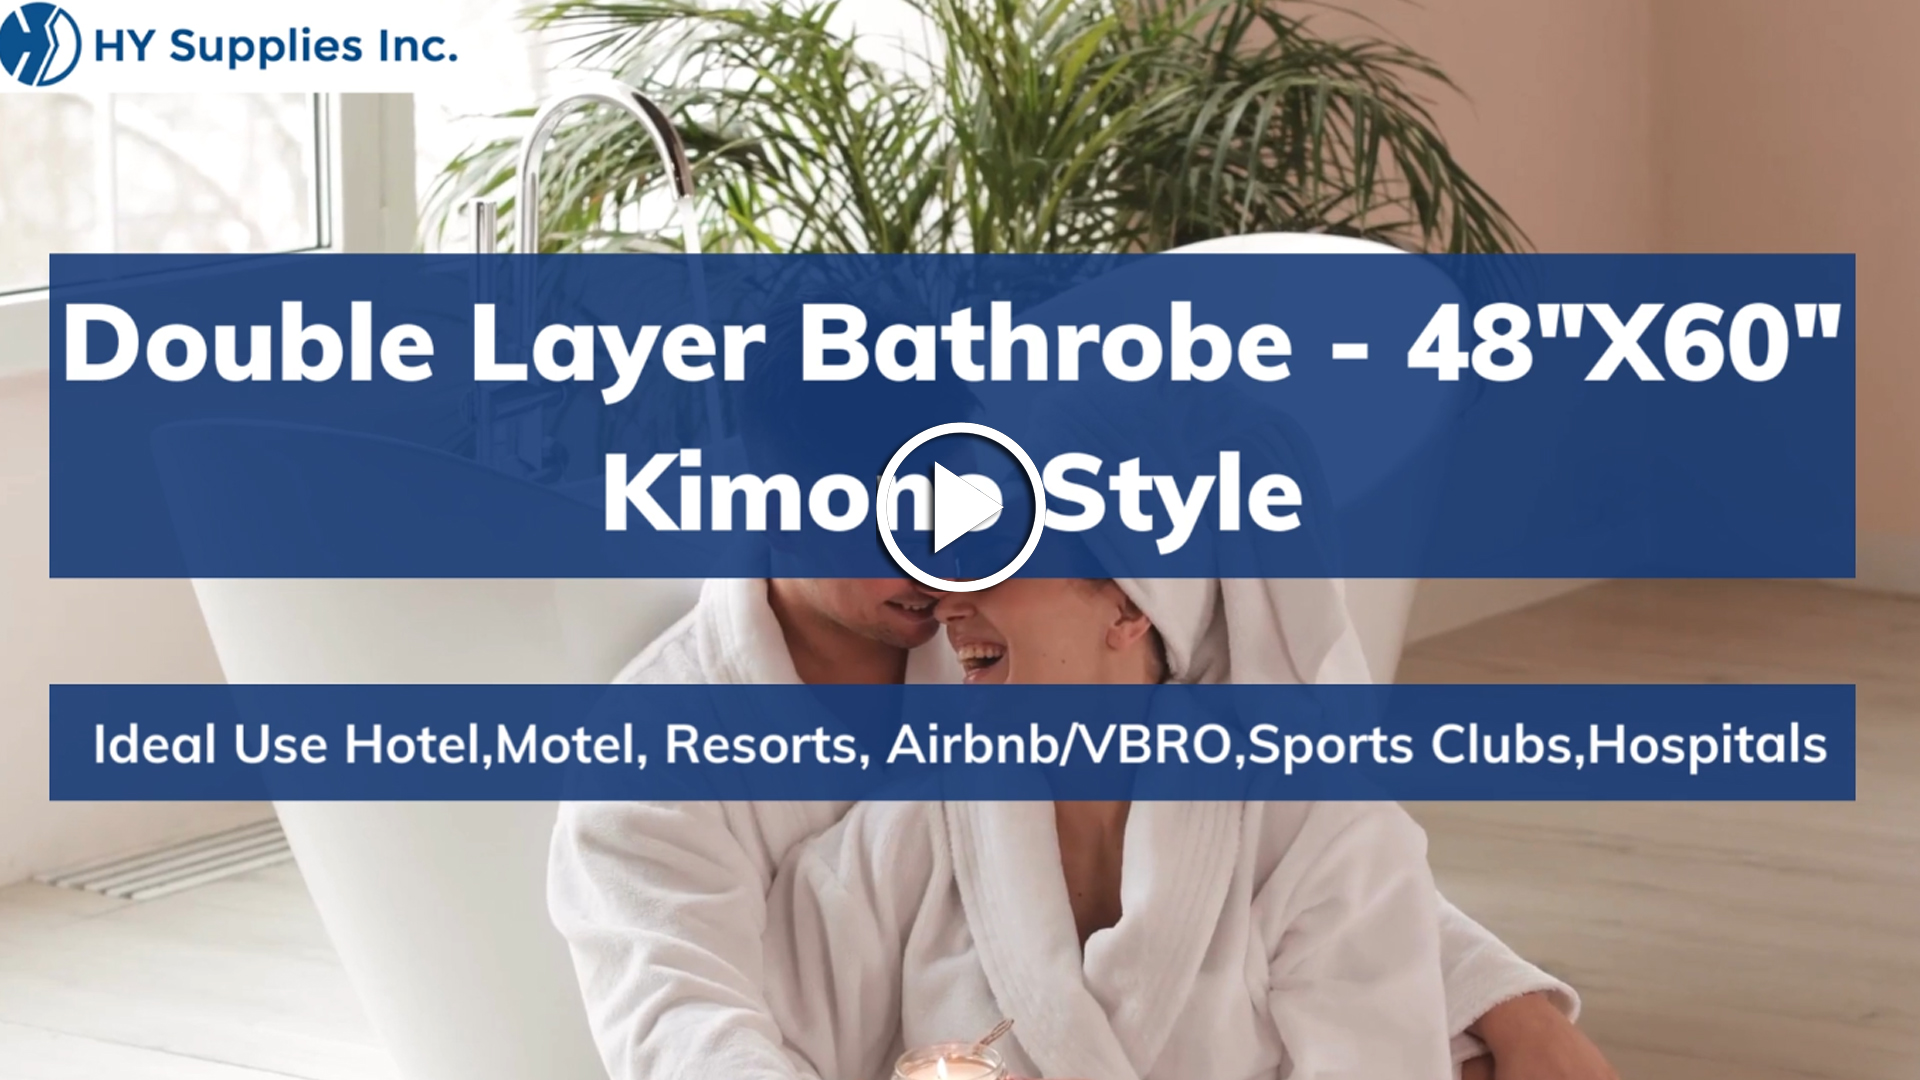 Double Layer Bathrobe - 48"X60" Kimono Style